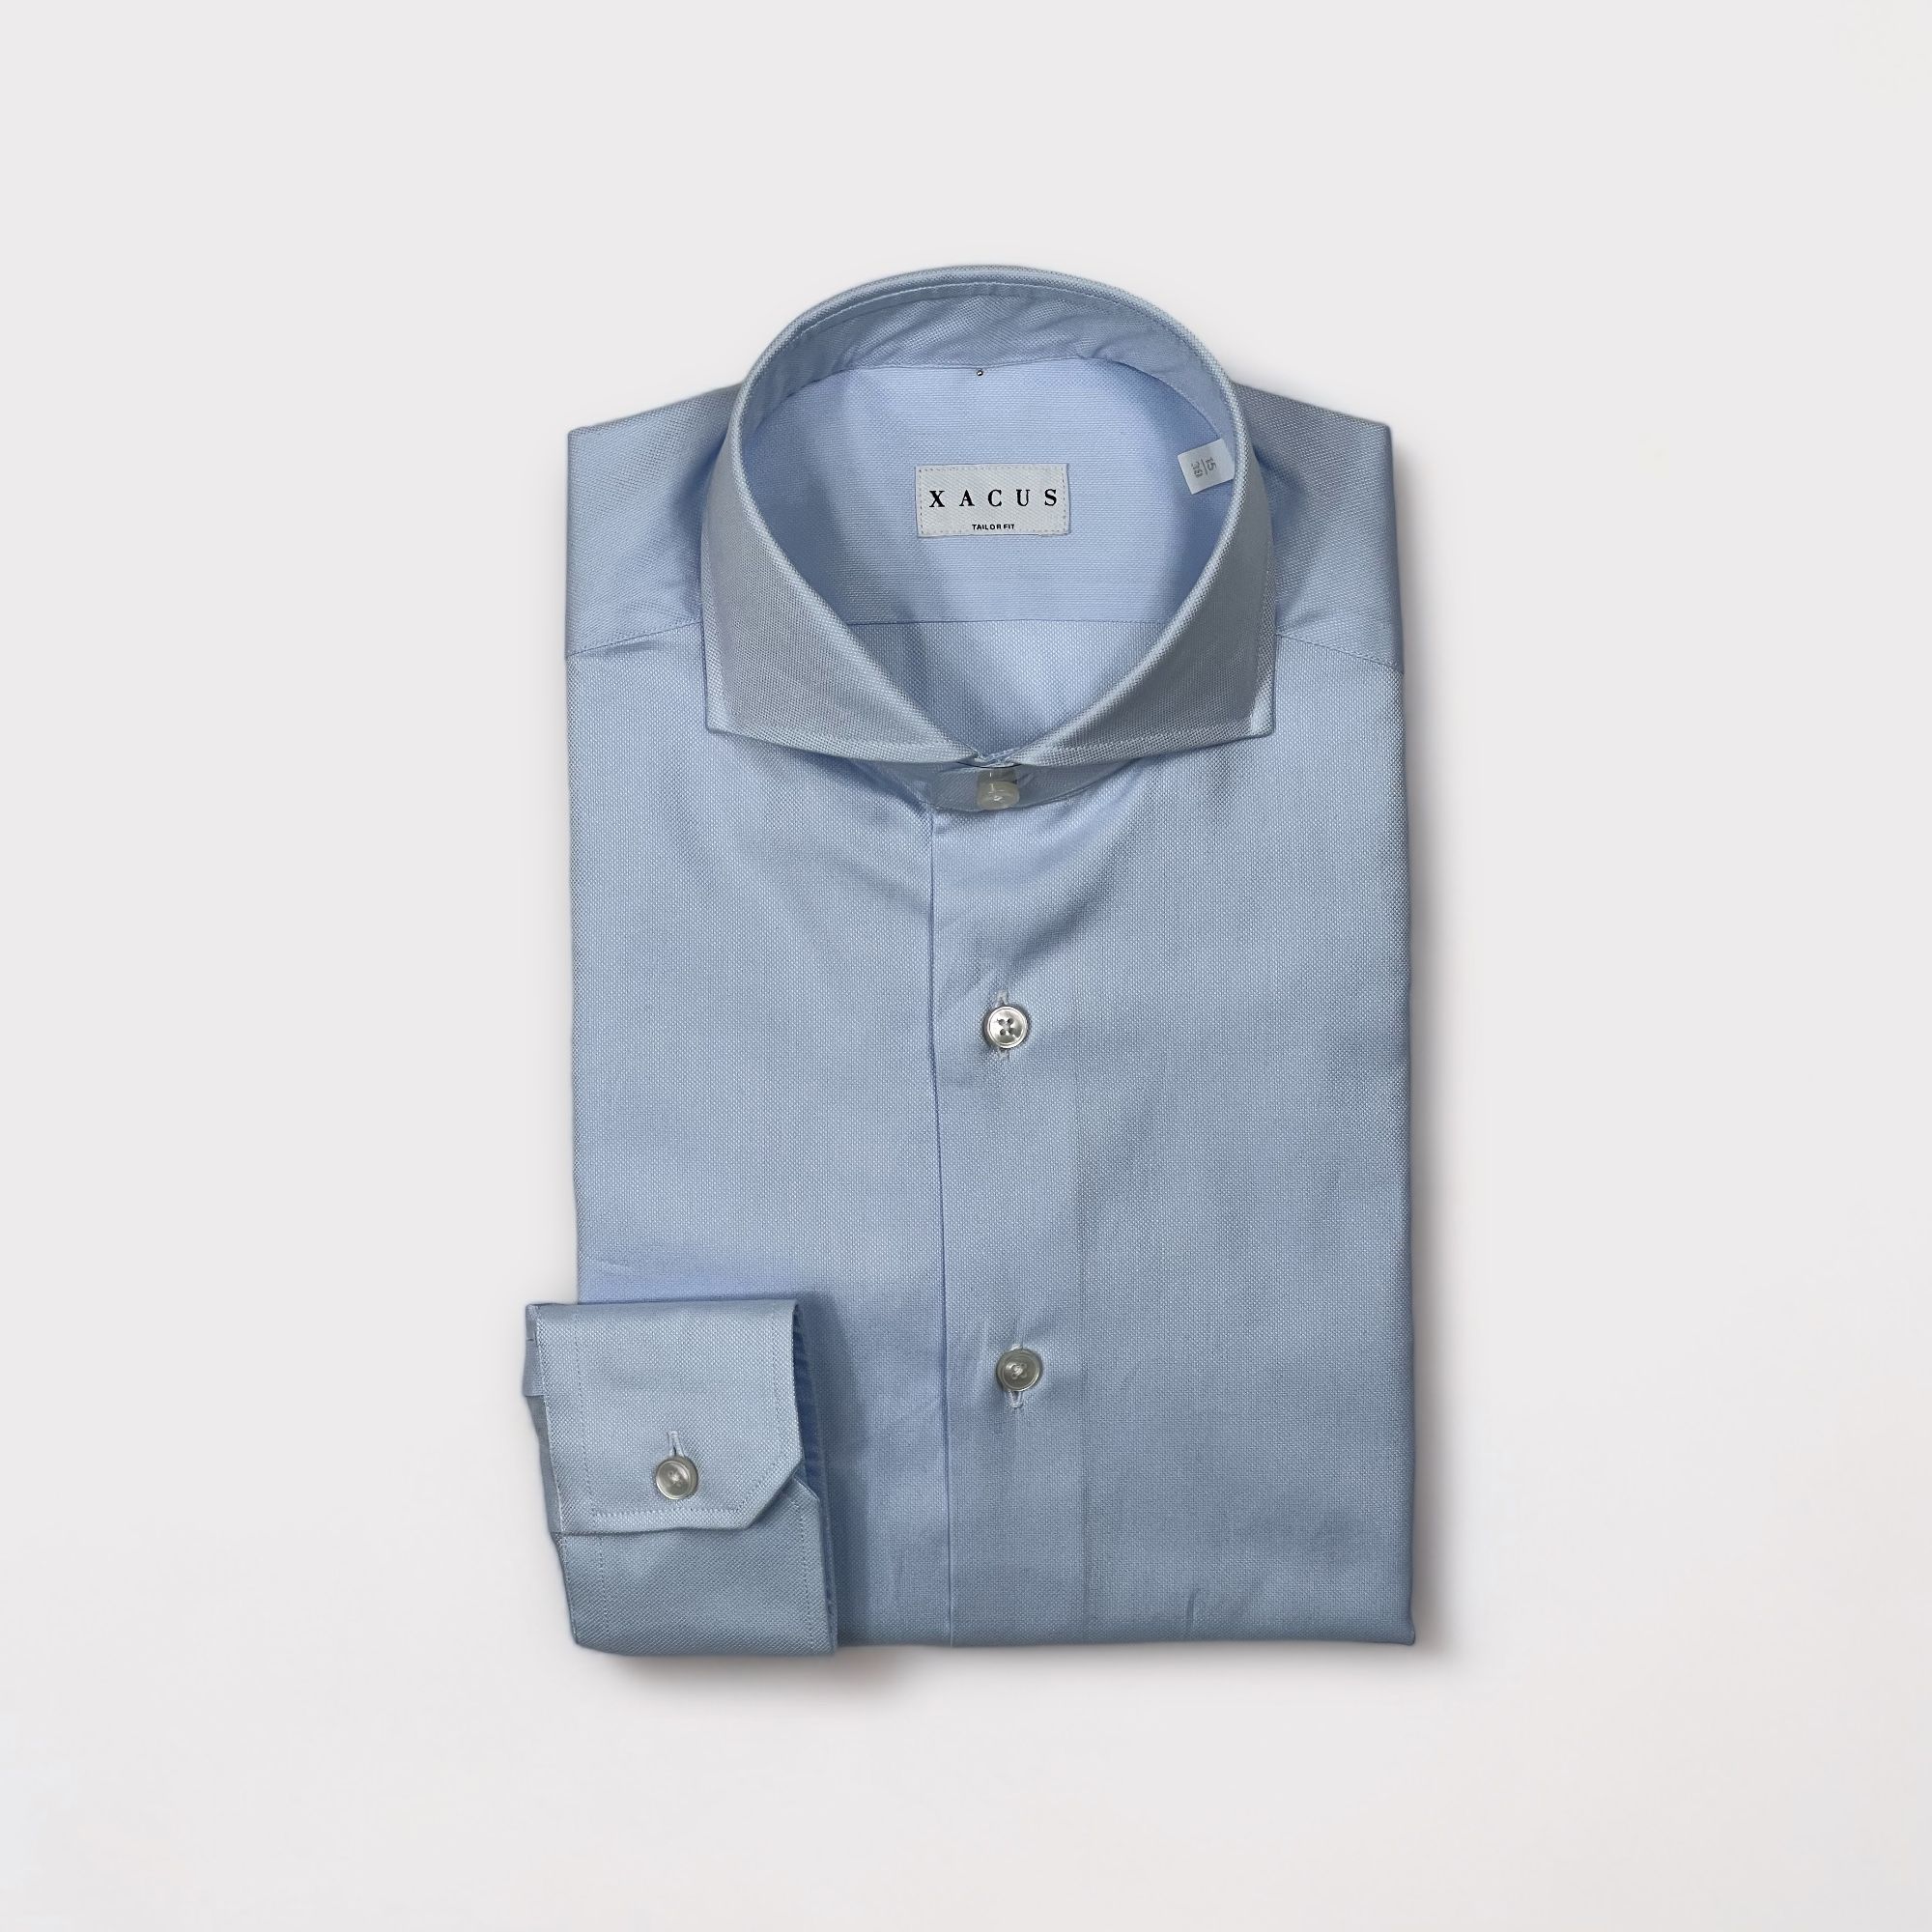 Xacus - Camicia con collo francese in puro cotone super oxford